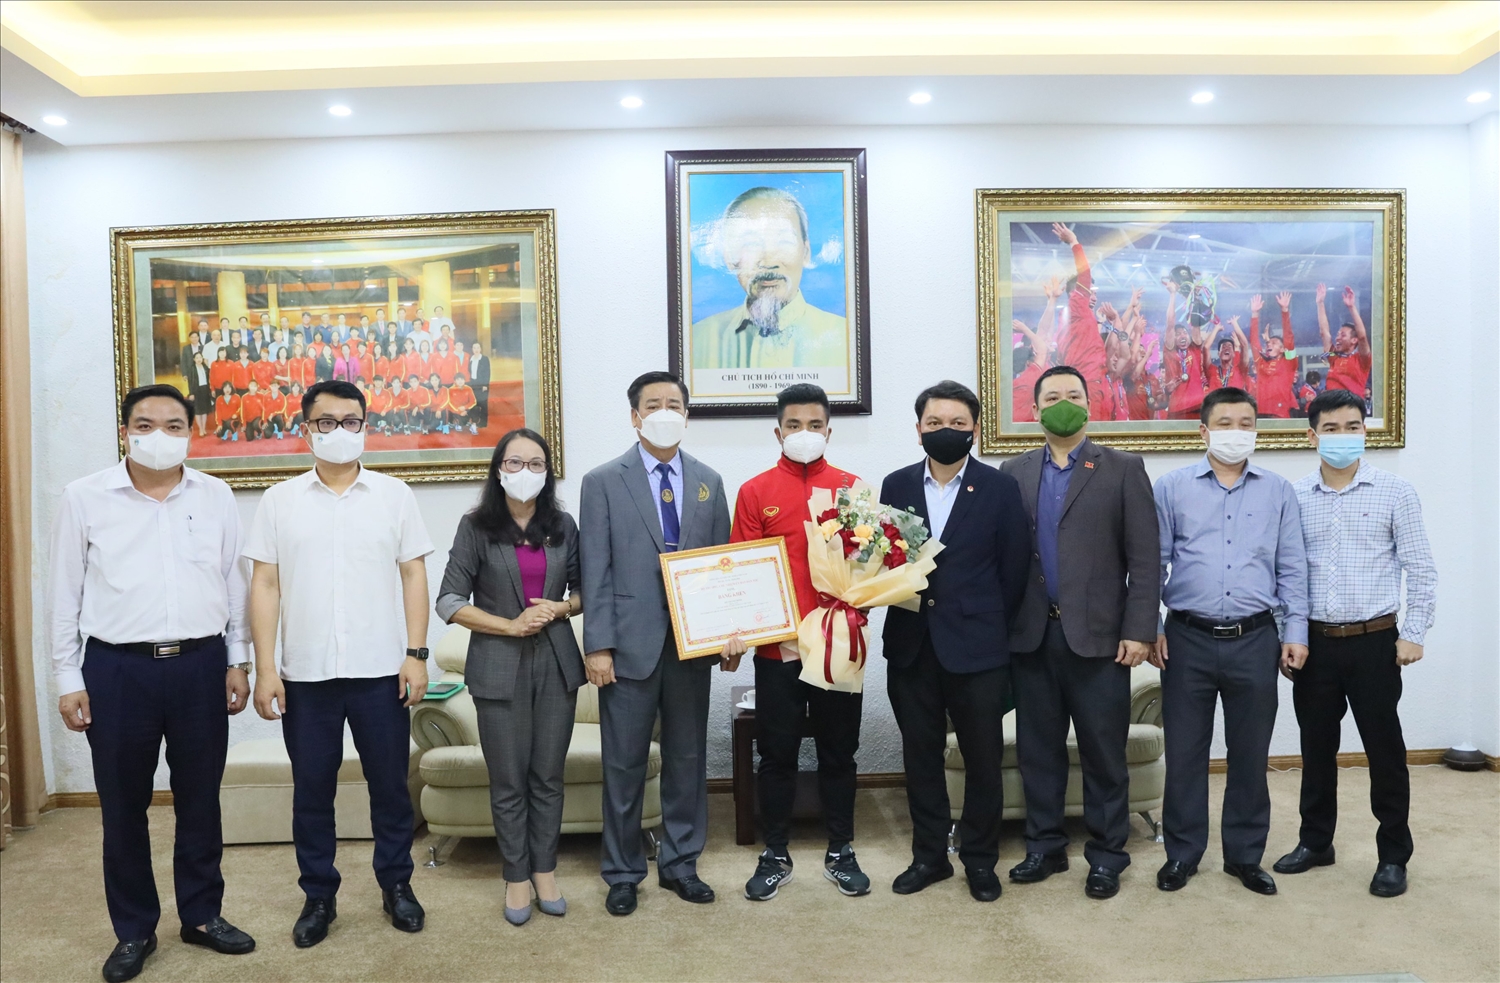 Thứ trưởng, Phó Chủ nhiệm UBDT Hoàng Thị Hạnh trao Bằng khen của Bộ trưởng, Chủ nhiệm UBDT cho cầu thủ Hồ Thanh Minh